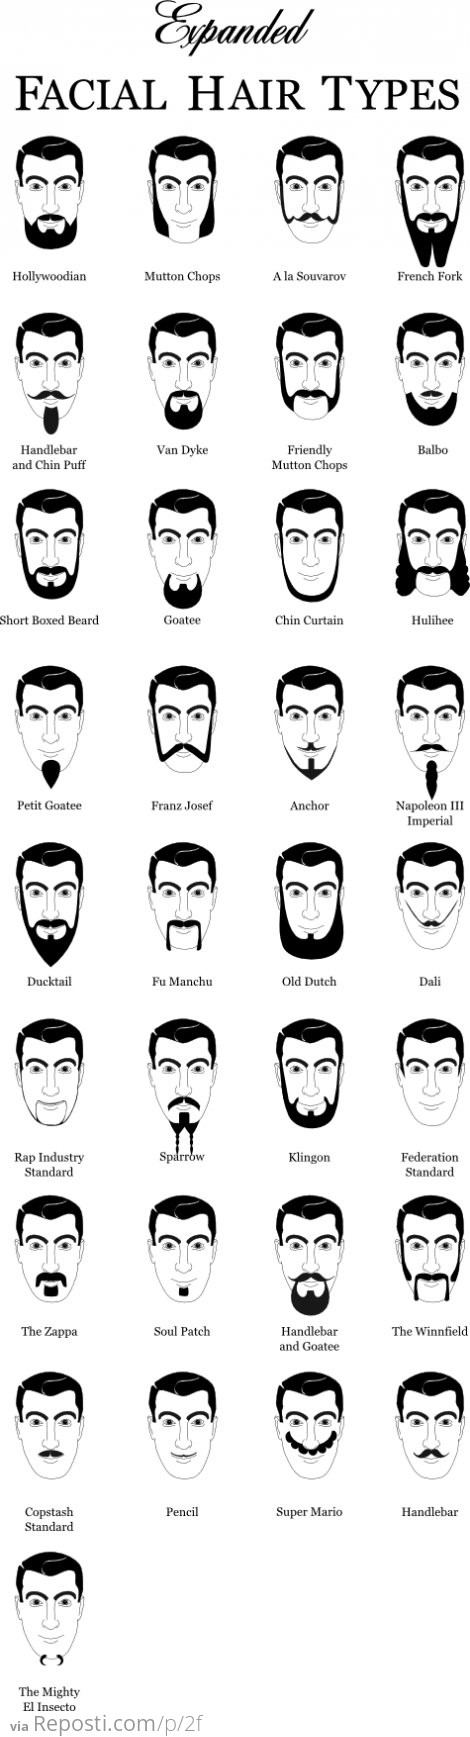 Facial Hair Types